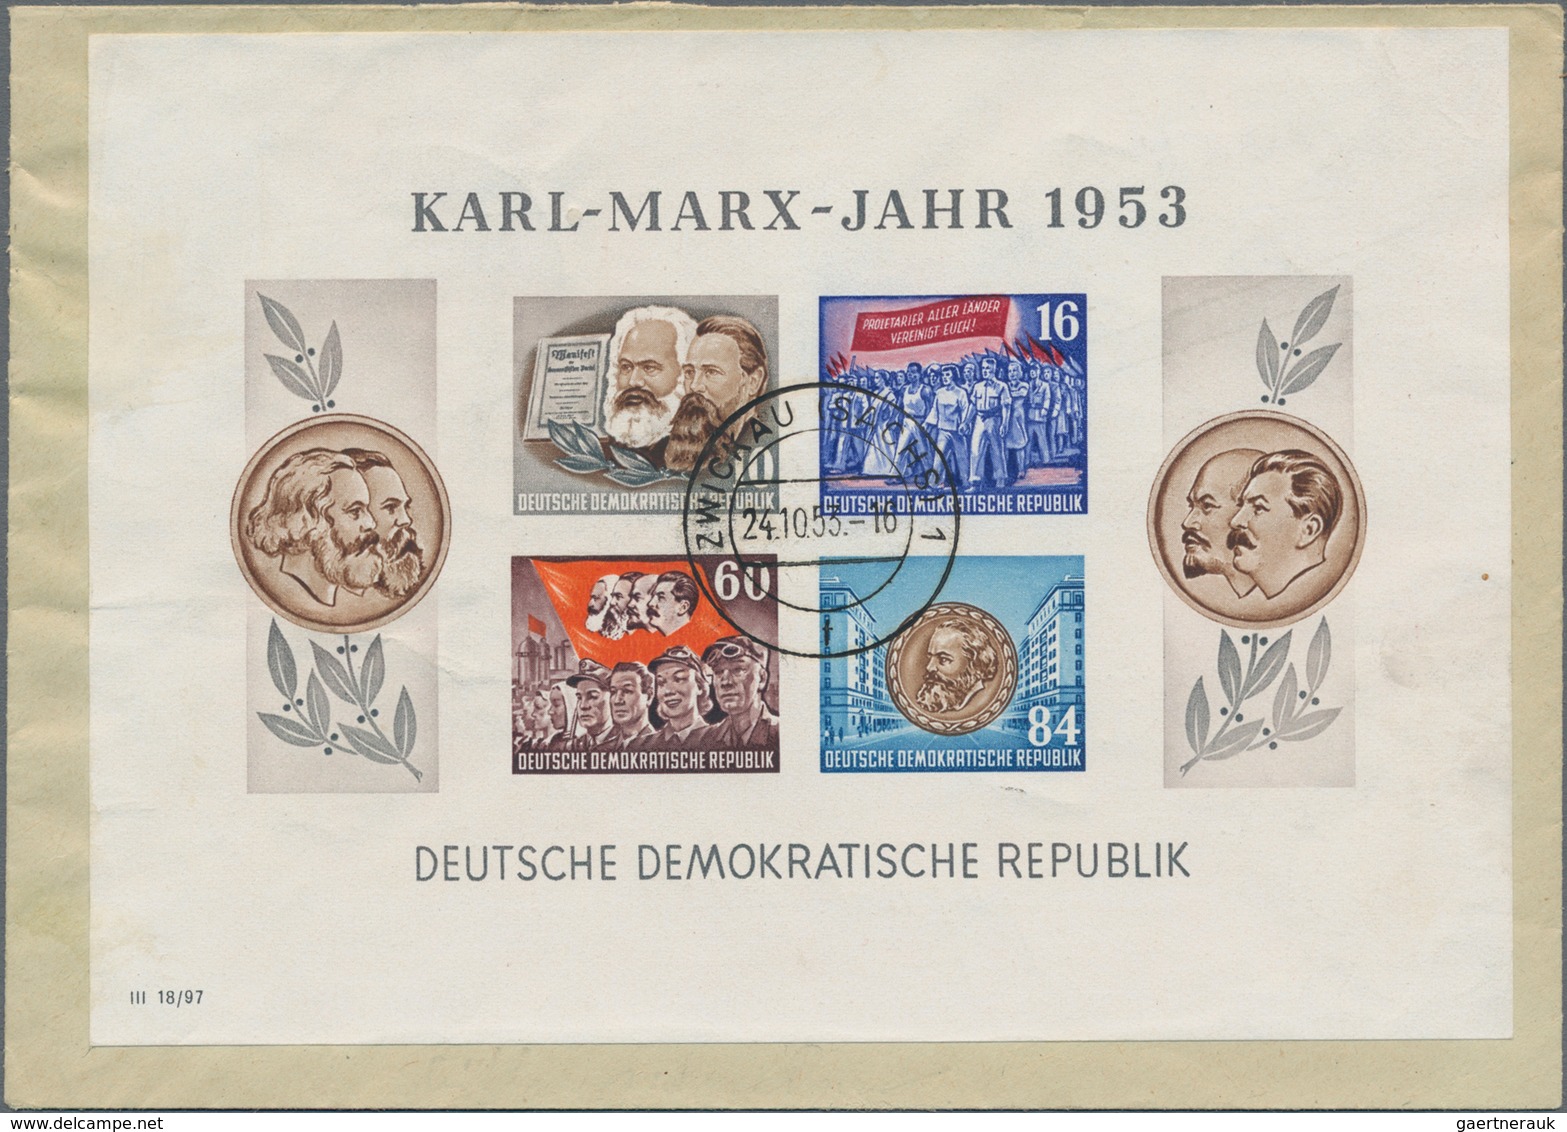 Sowjetische Zone und DDR: 1945/1965 (ca.), reichhaltiger Steckkartenposten mit zahlreichen guten und